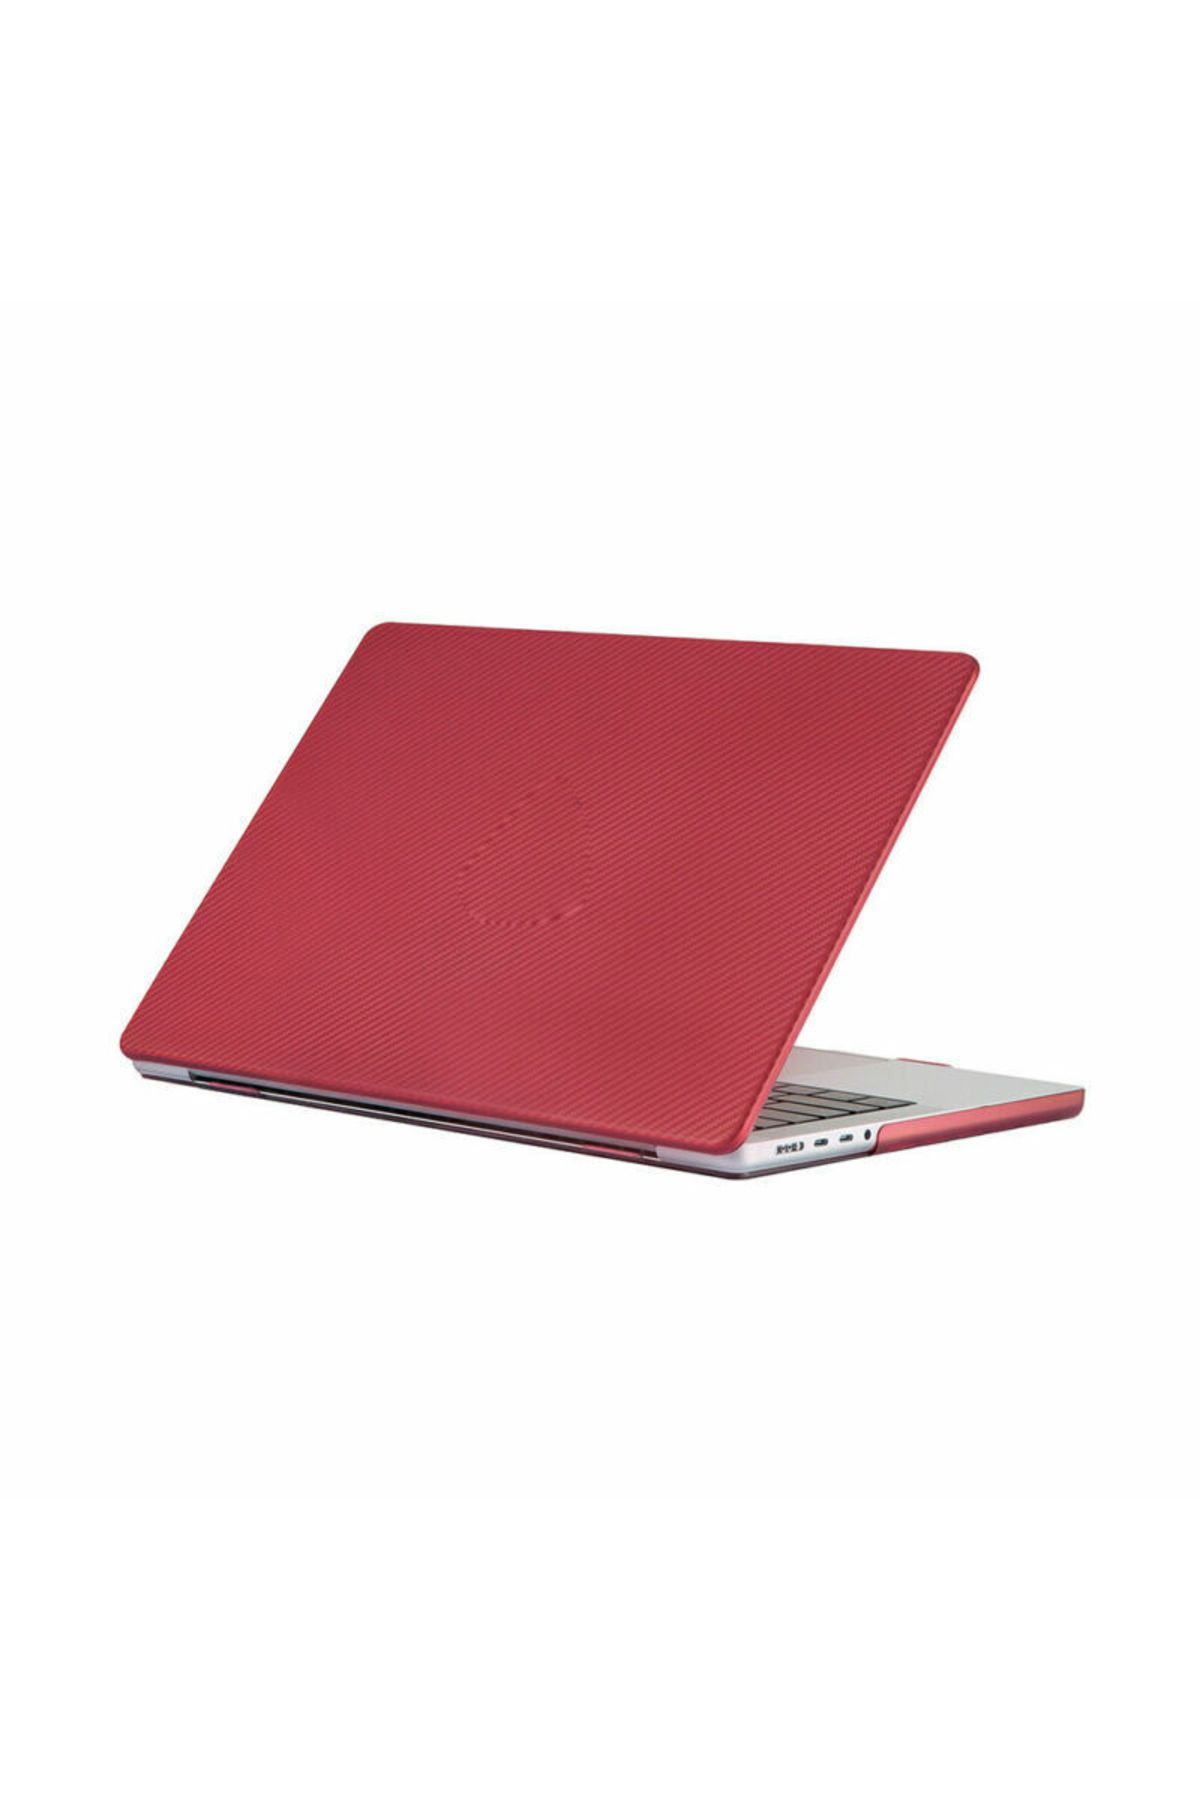 ARABULALACA Macbook Pro 13 A1706 A1708 Koruma Karbon Kılıfı Hardcase Kapak Kılıf